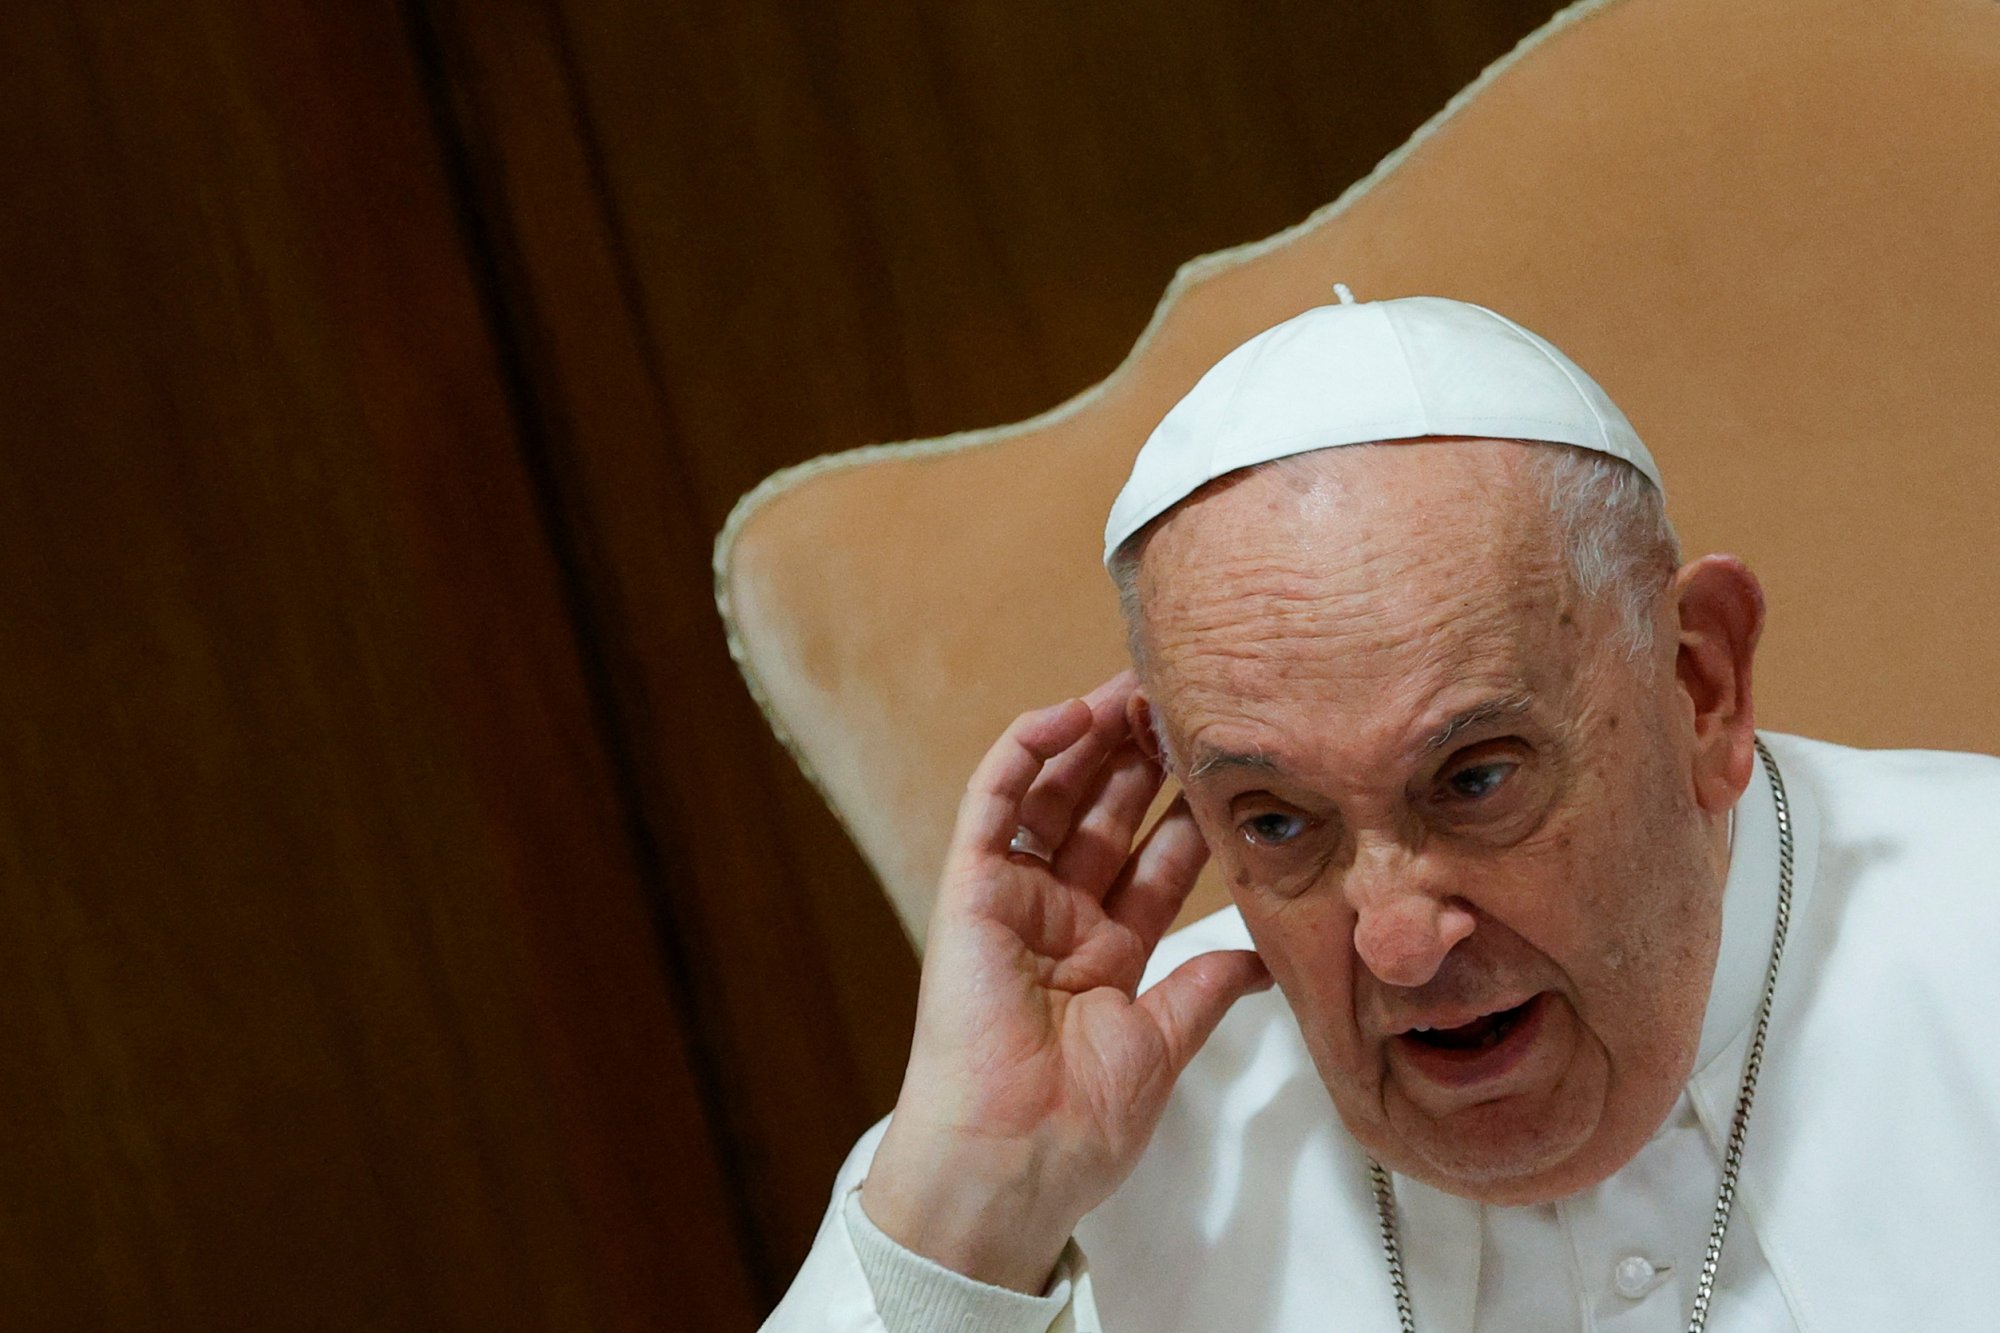 Βατικανό: Και η Αγία Έδρα φοβέρα θέλει - Εργαζόμενοι προσφεύγουν καταγγέλλοντας εργασιακό μεσαίωνα